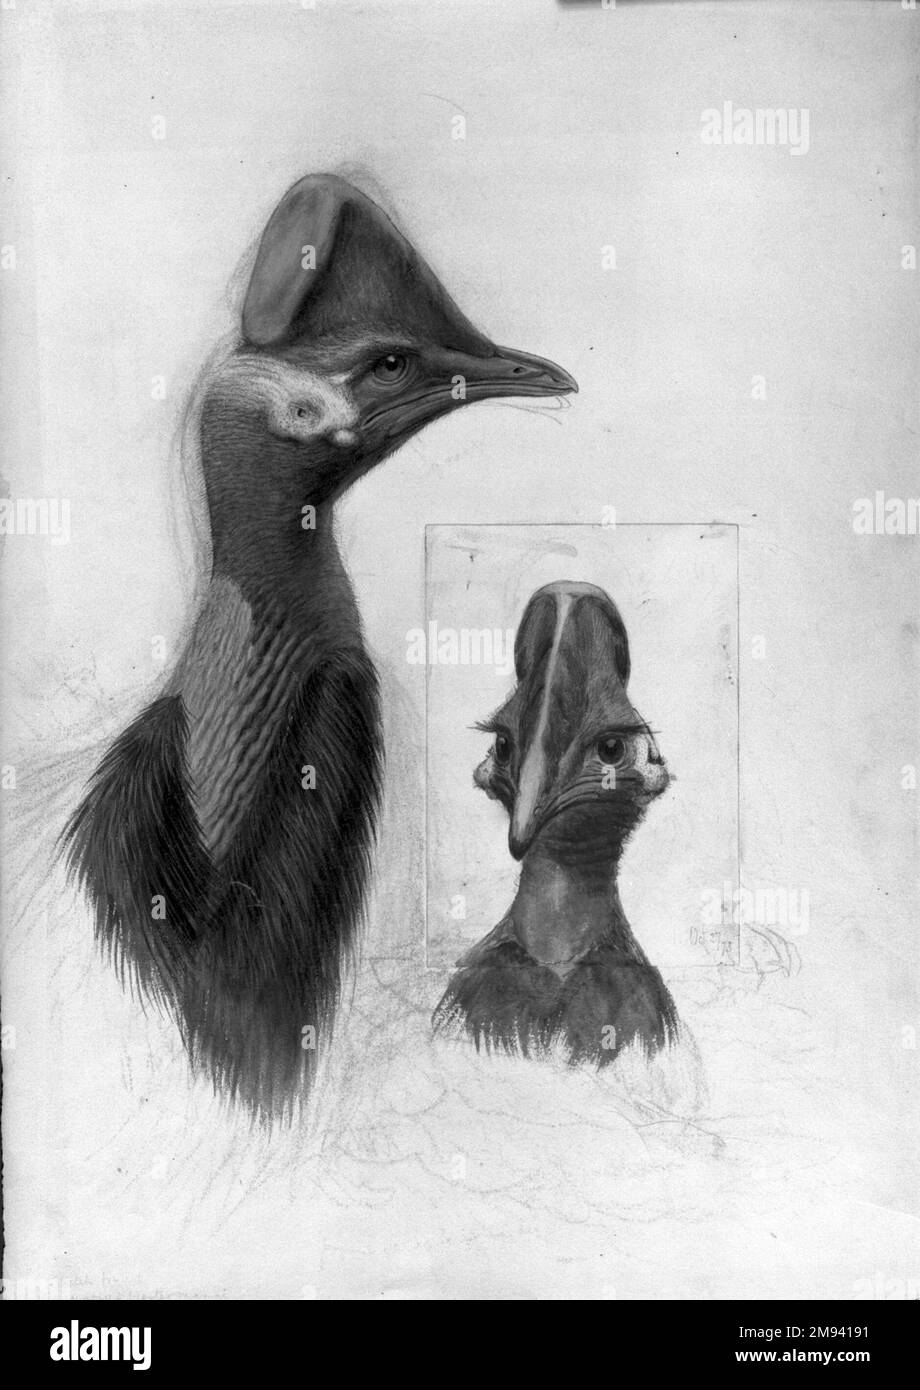 Casuarius Westerman John Gould (Britisch, 1804-1881). Casuarius Westerman, 1873. Aquarell, lichtundurchlässig, anthrazit, Graphit und selektiv aufgebrachte Glasur auf gewebtem Papier, 22 1/2 x 15 13/16 Zoll (57,2 x 40,2 cm). Der britische Naturforscher John Gould war berühmt für seine üppig illustrierten Bücher über Vögel. Diese Zeichnung bildete die Grundlage für eine Farblithographie in seinen Birds of New Guinea, die vier Jahre nach seinem Tod veröffentlicht wurde. Obwohl das Bild ein Paar Kasuare zu zeigen scheint, zeigt es tatsächlich zwei Ansichten desselben Vogels, der kürzlich im Londoner Zoo gestorben war. Der nach vorne gerichtete Vogel Stockfoto